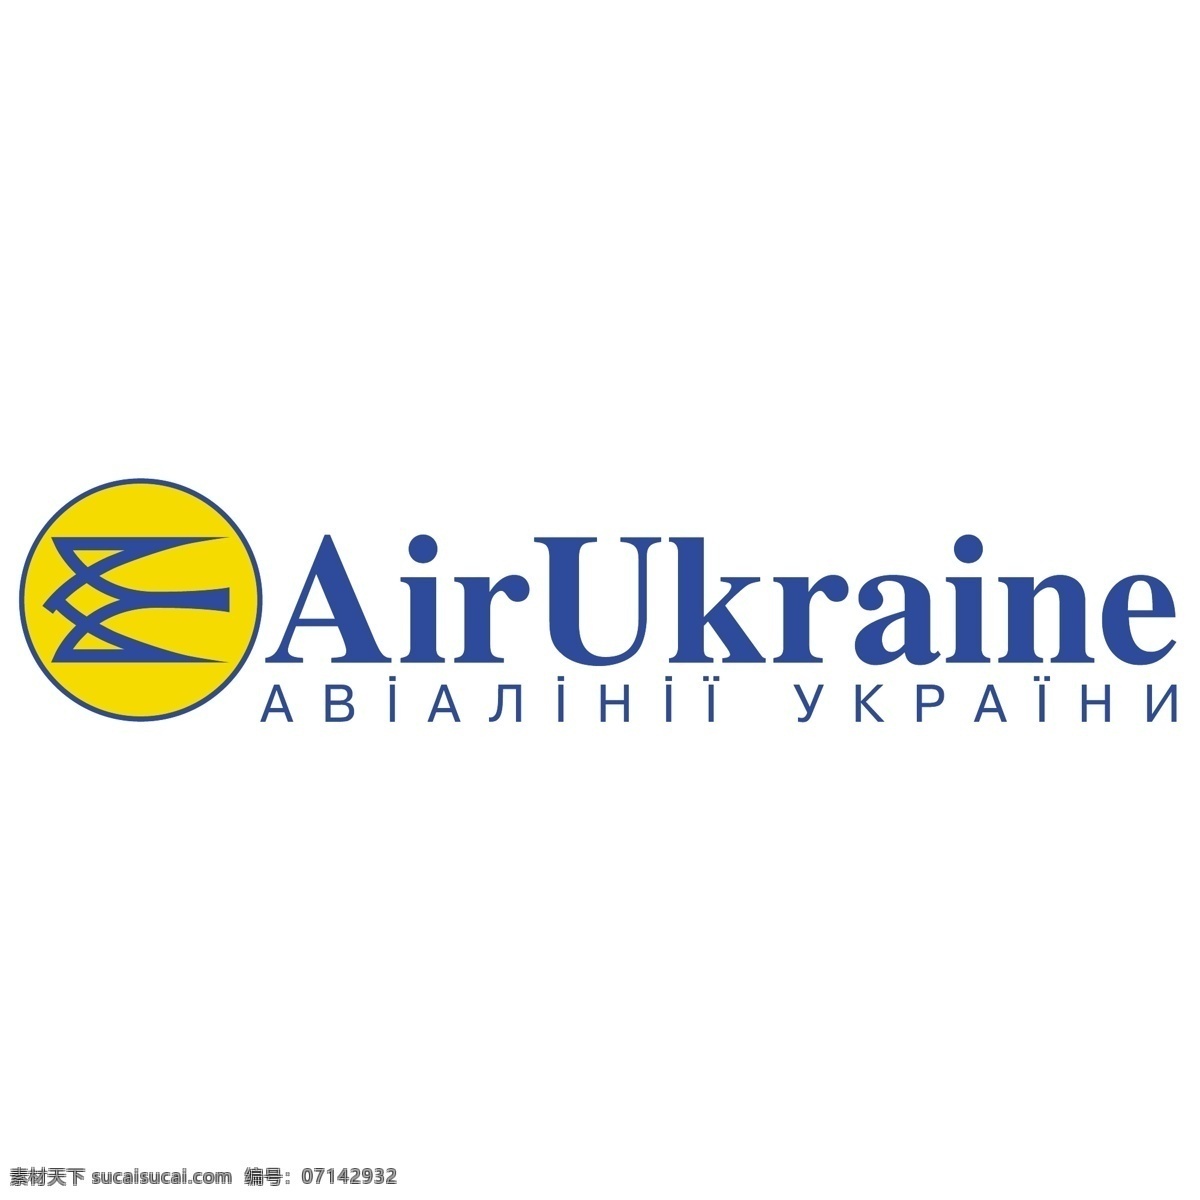 乌克兰航空0 空气 空气乌克兰 乌克兰 对空气的载体 空中图像 矢量艺术空气 空气的设计 空气自由 矢量 艺术 自由 图形 在空气中 载体 建筑家居